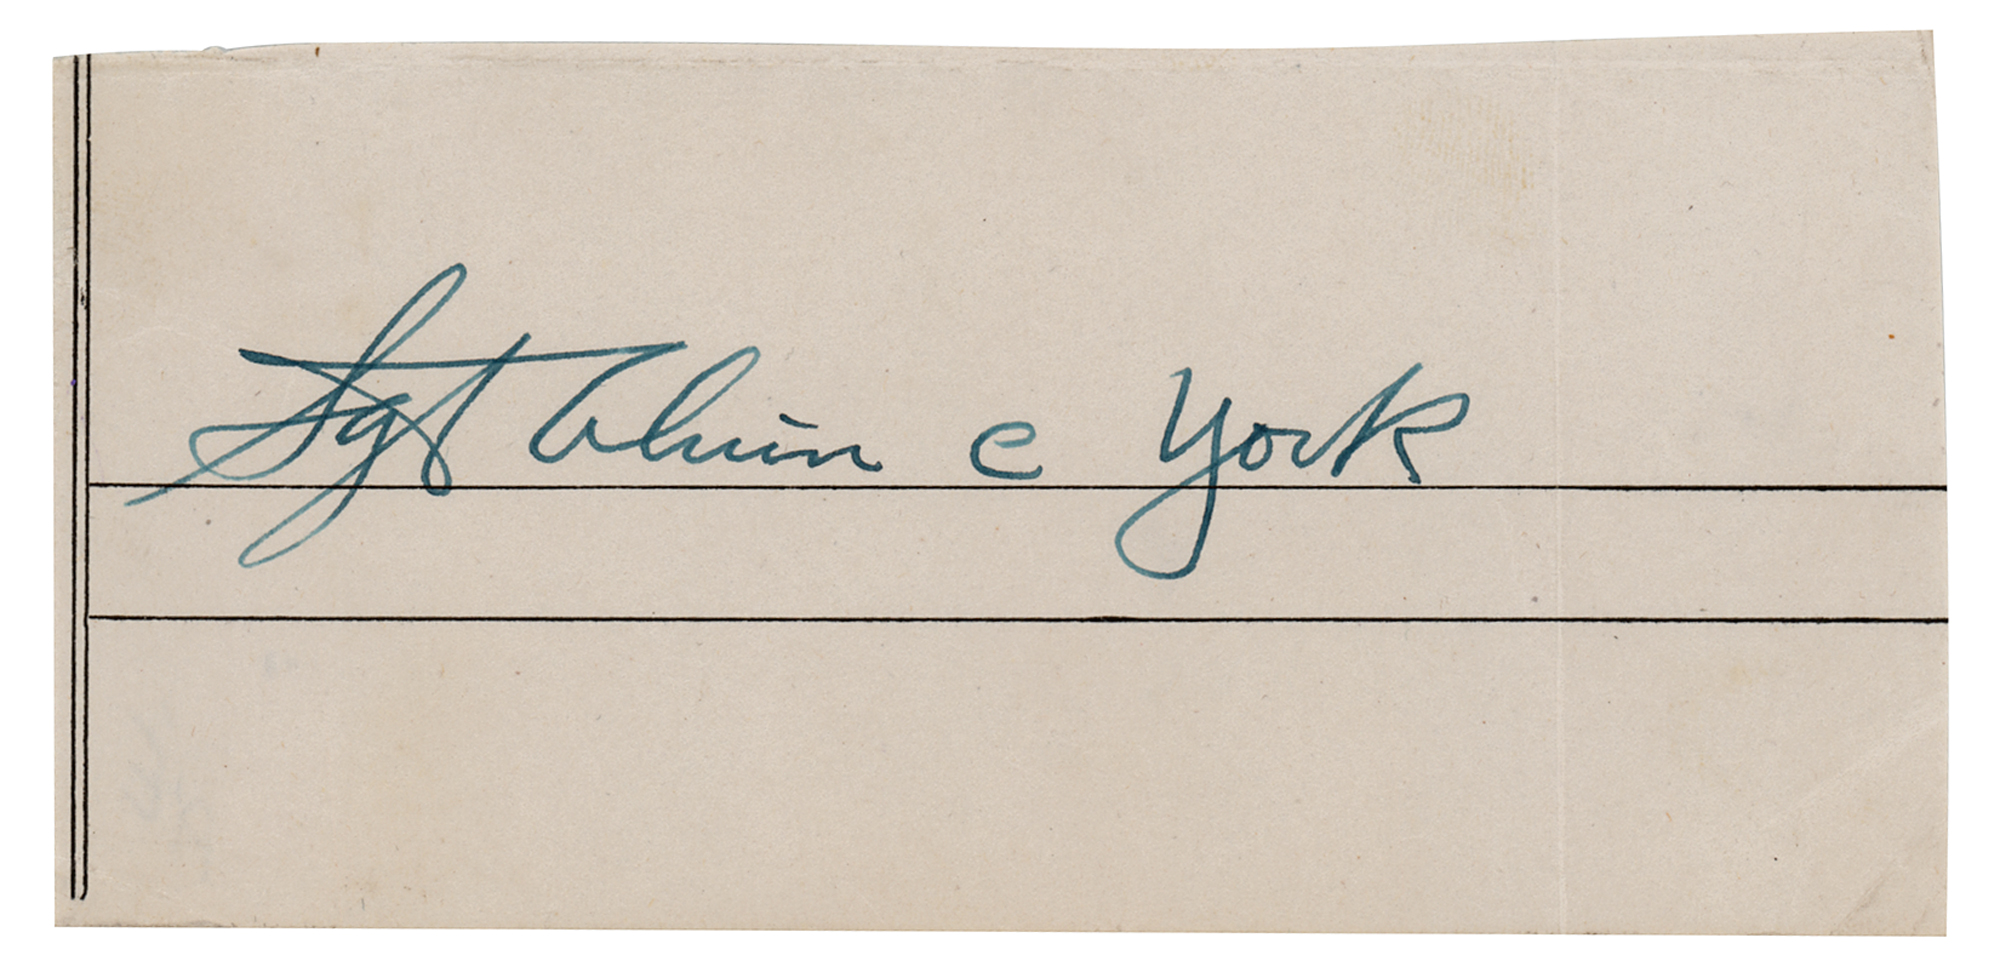 Sgt. Alvin C. York Signature